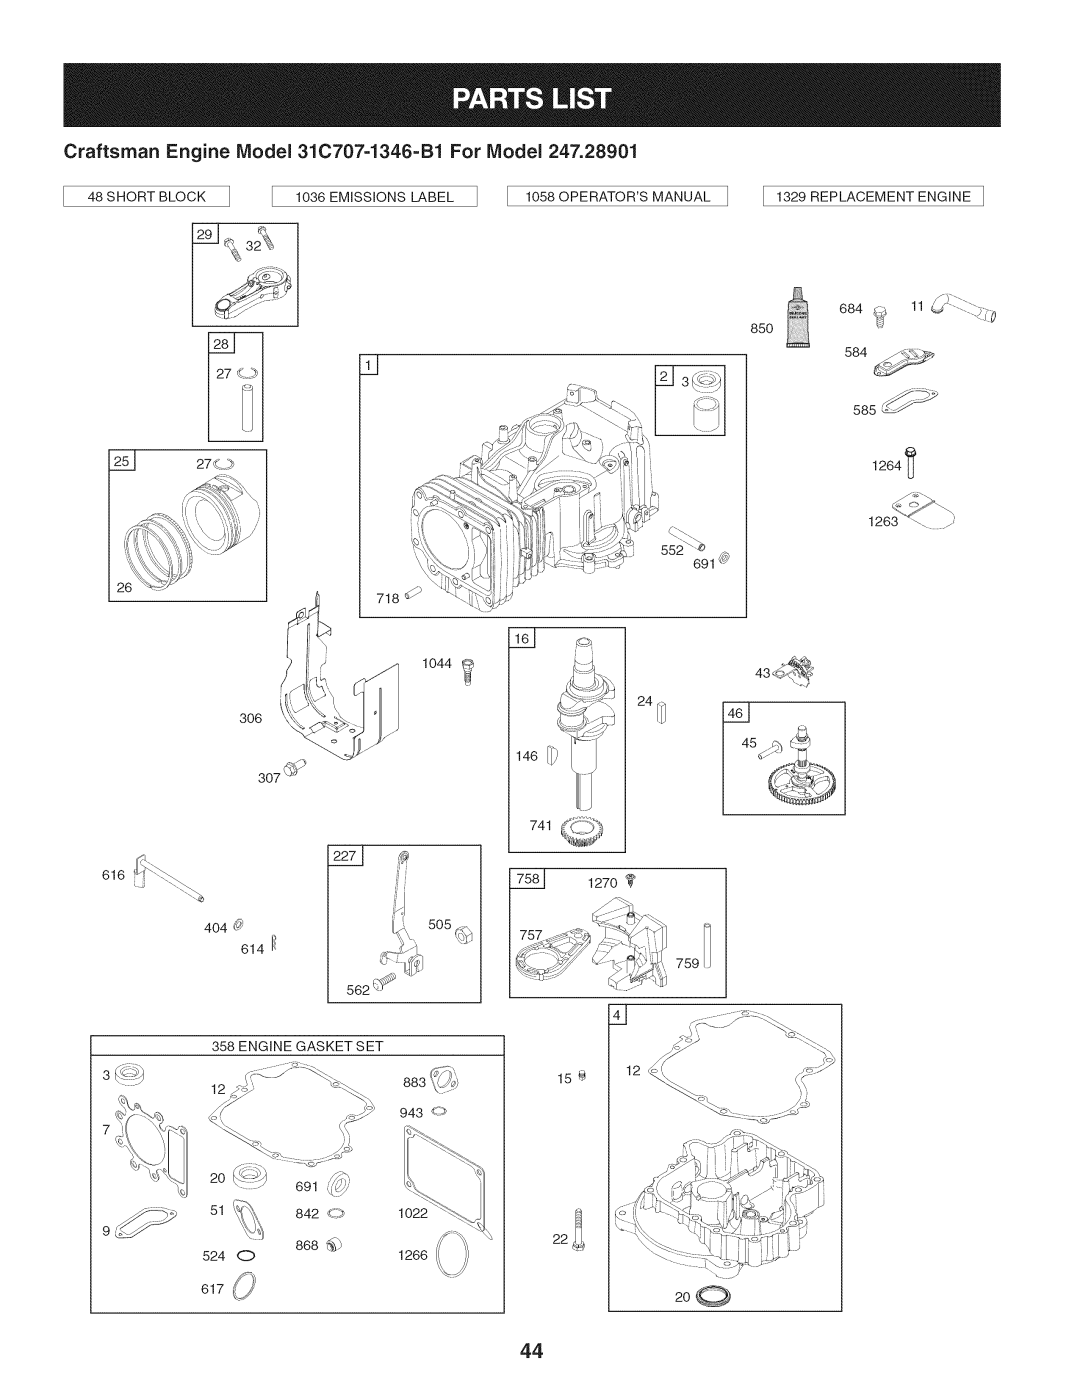 Craftsman 247.28901 manual 2o_ 51_, 146:_i, 1270, 3_12, Craftsman Engine Model 31C707-1346-B1 For Model, _ ,h:_!> 